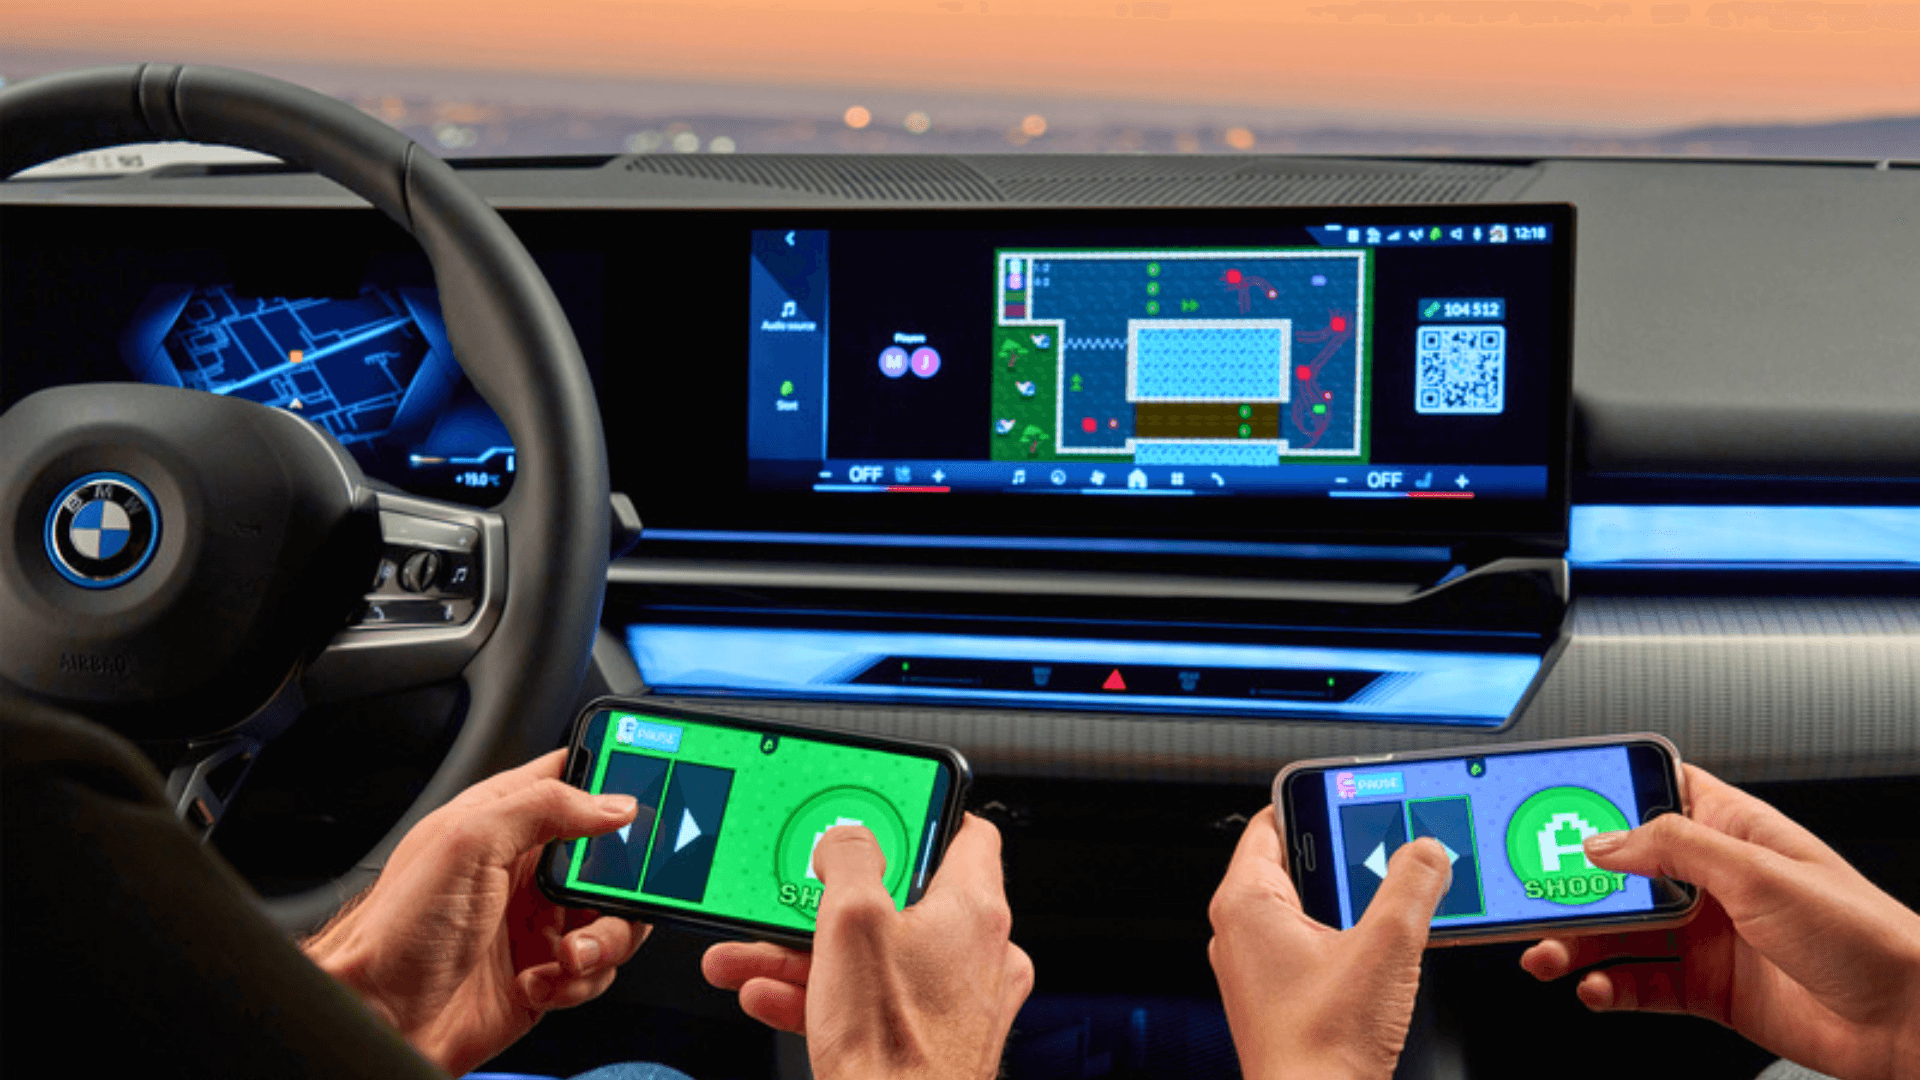 Carros gamers estão chegando: em collab, BMW e AirConsole lançam jogos multimídia